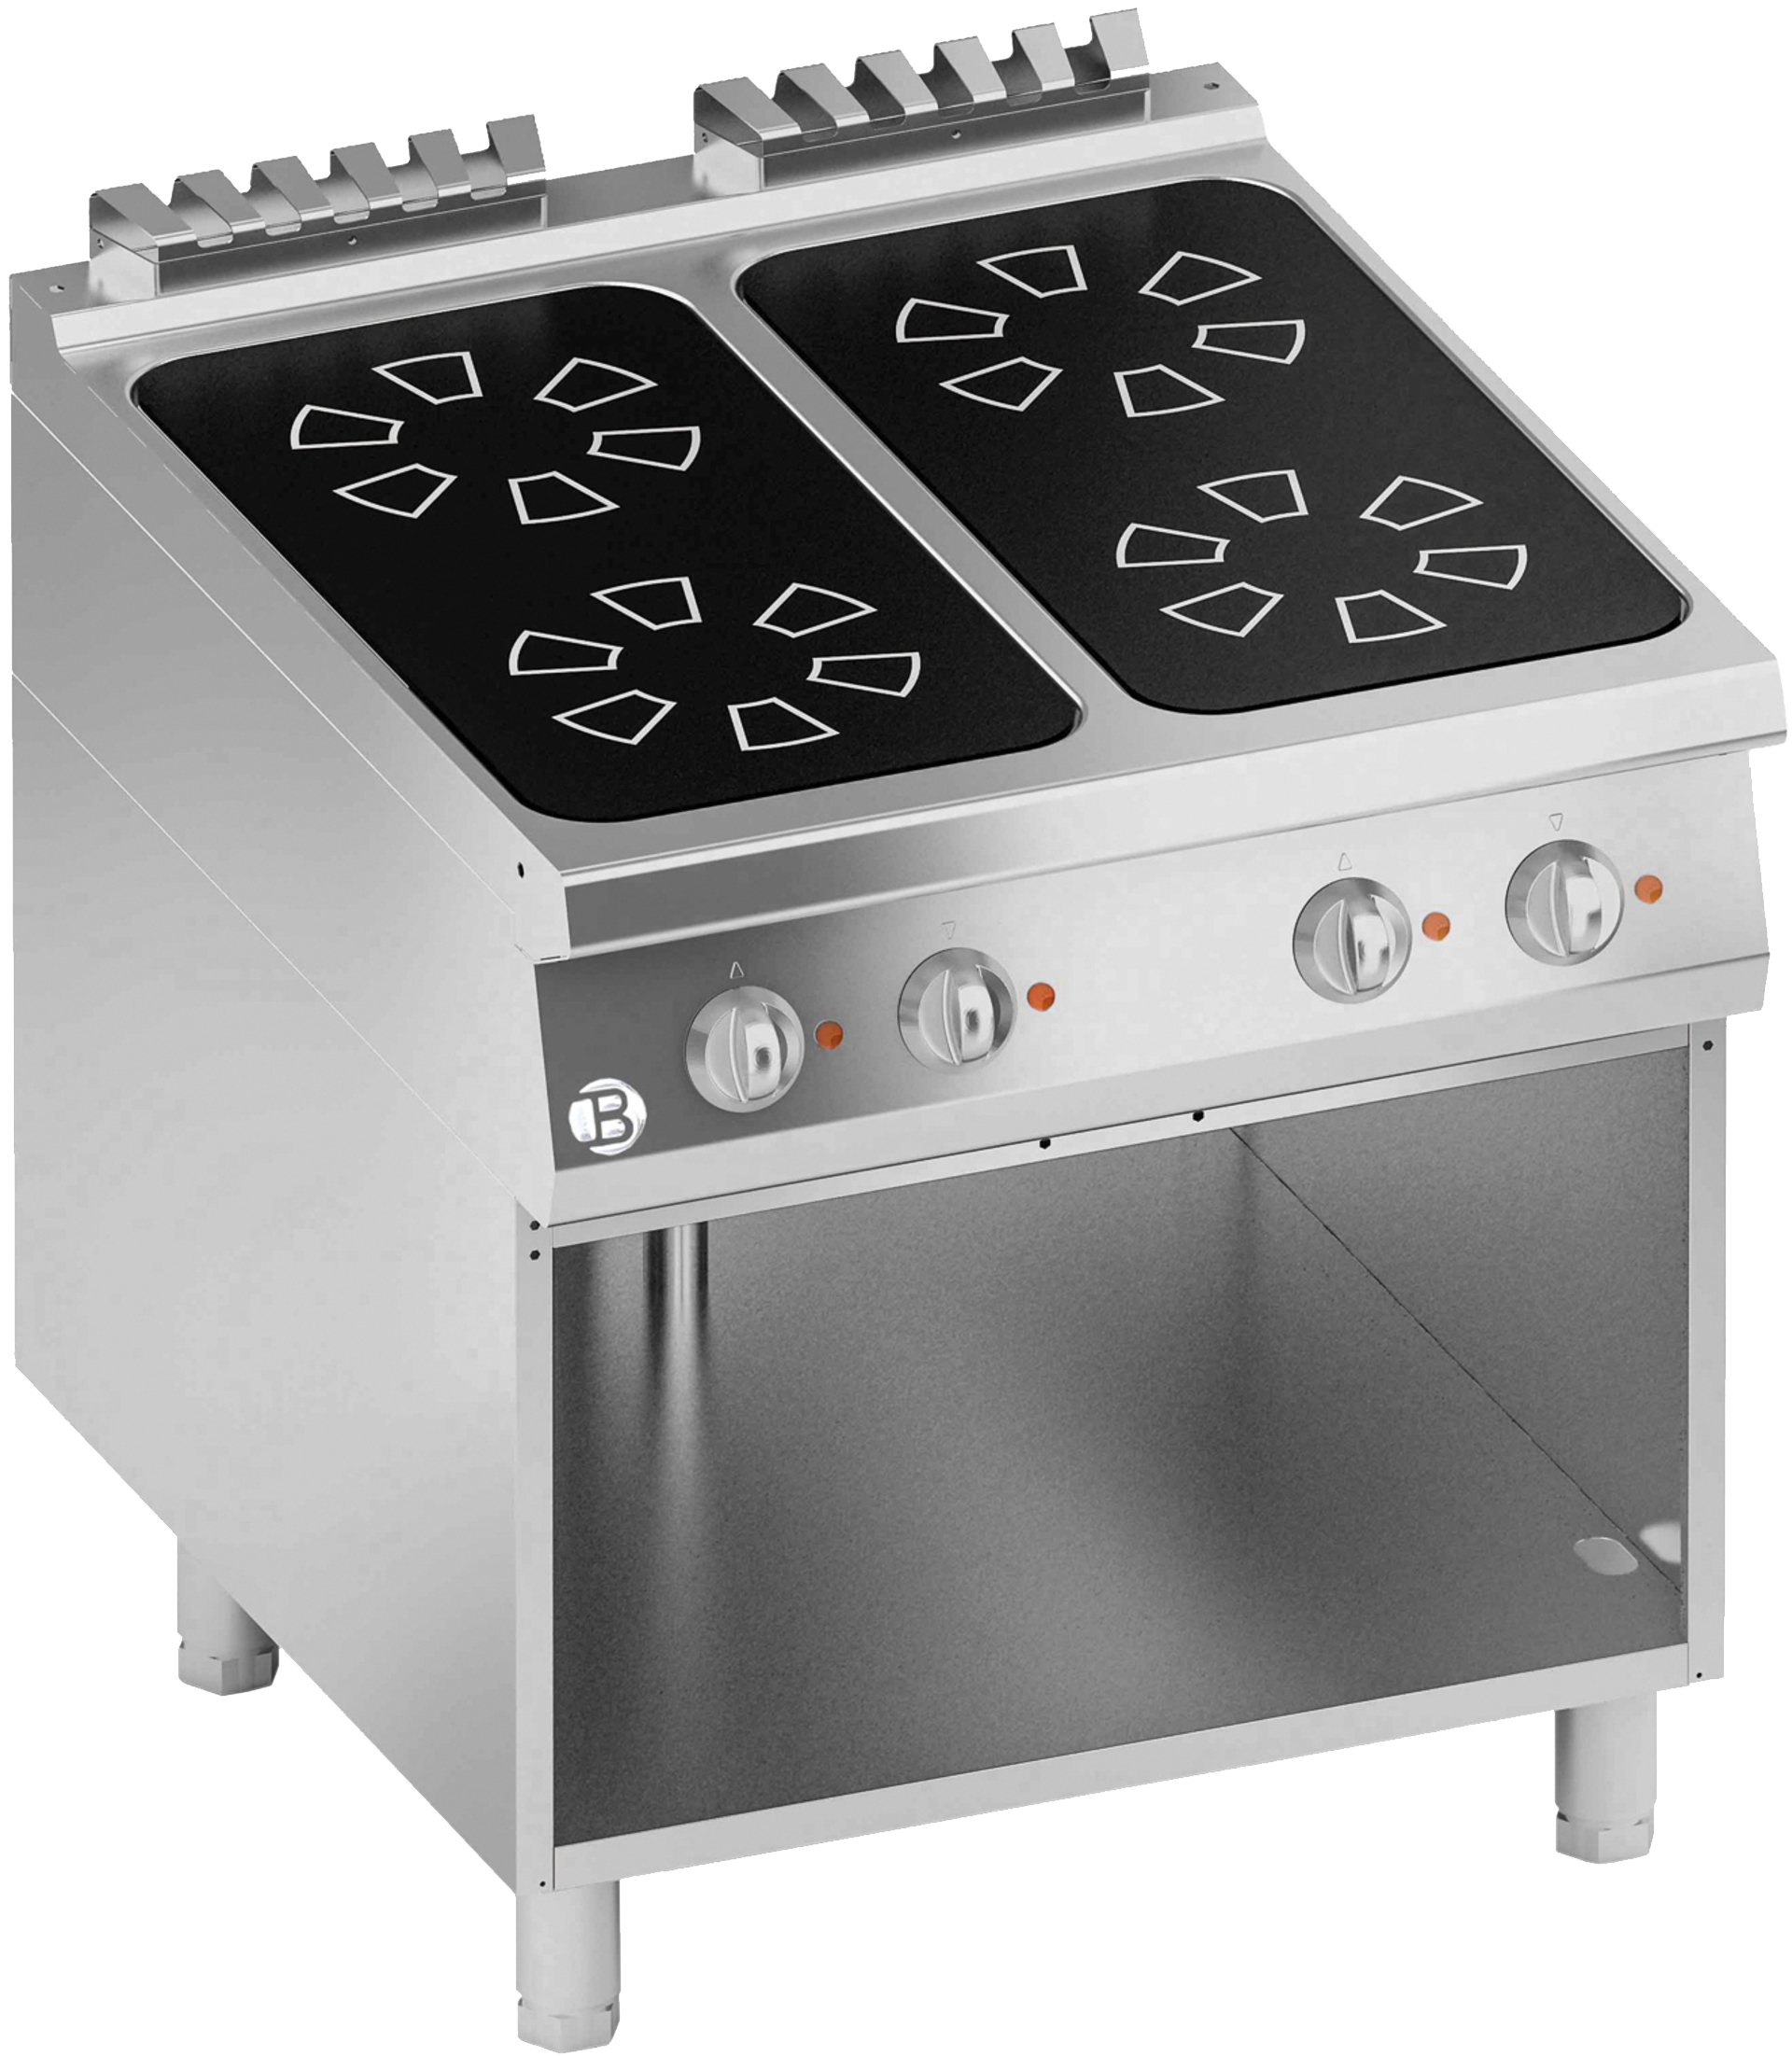 bartscher série 900 cuisinière électrique